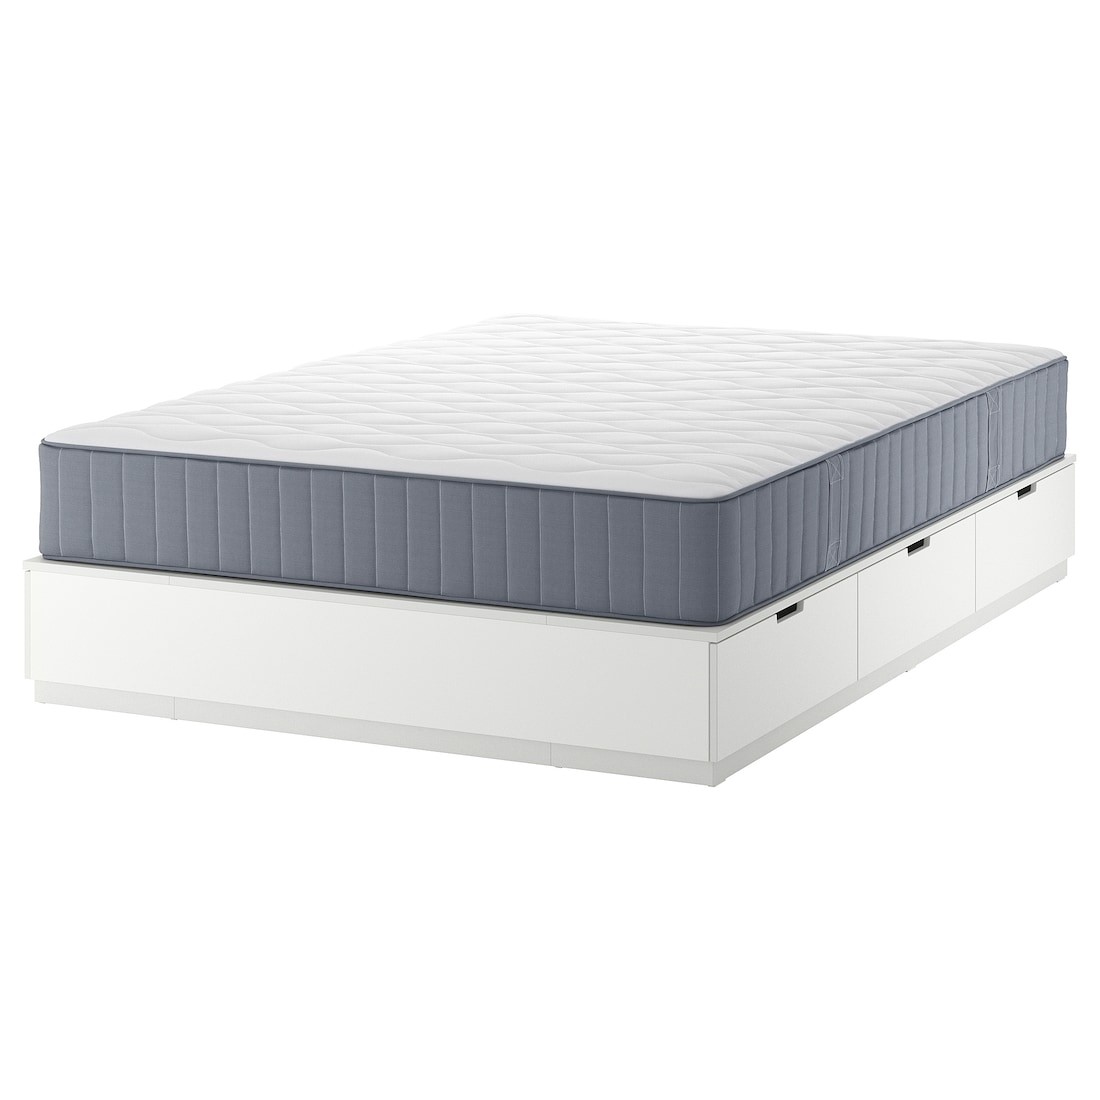 NORDLI Кровать с контейнером и матрасом, белый / Vågstranda средней жесткости, 140x200 см